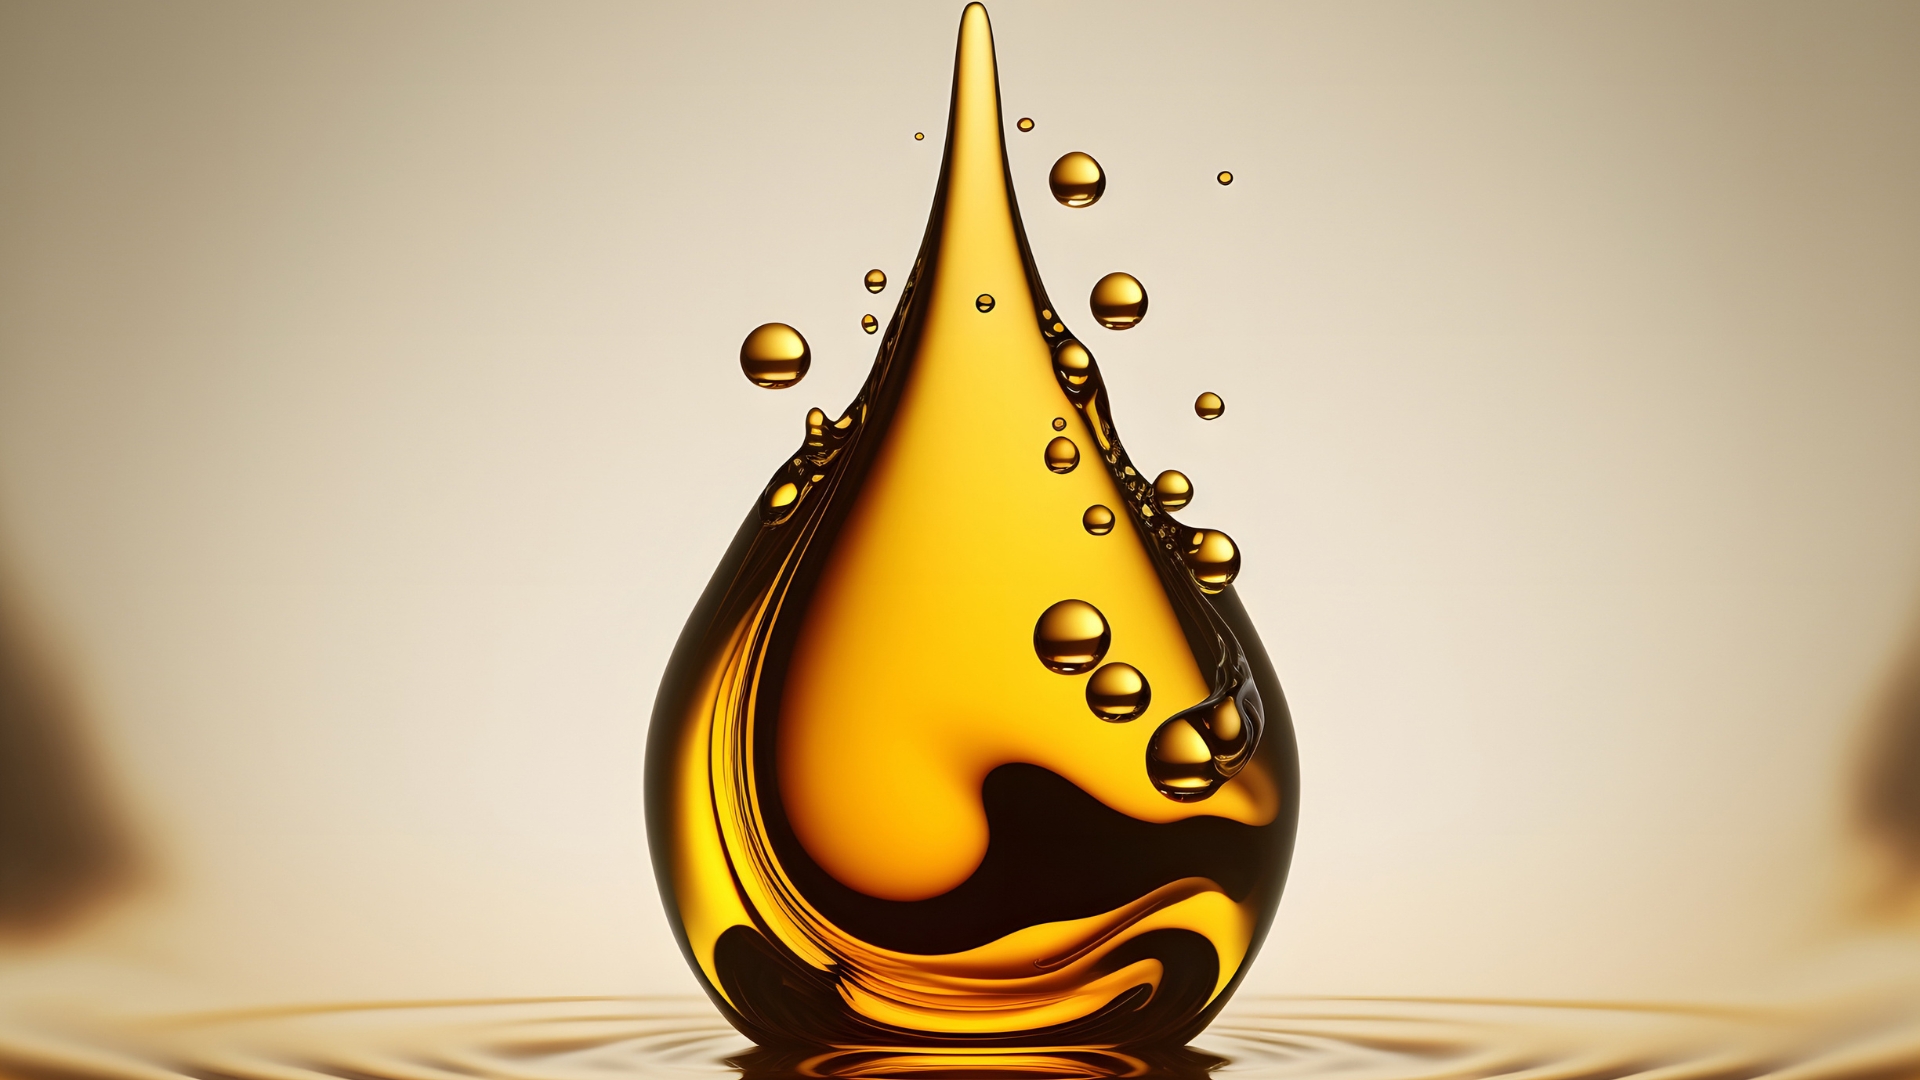 A drop of oil